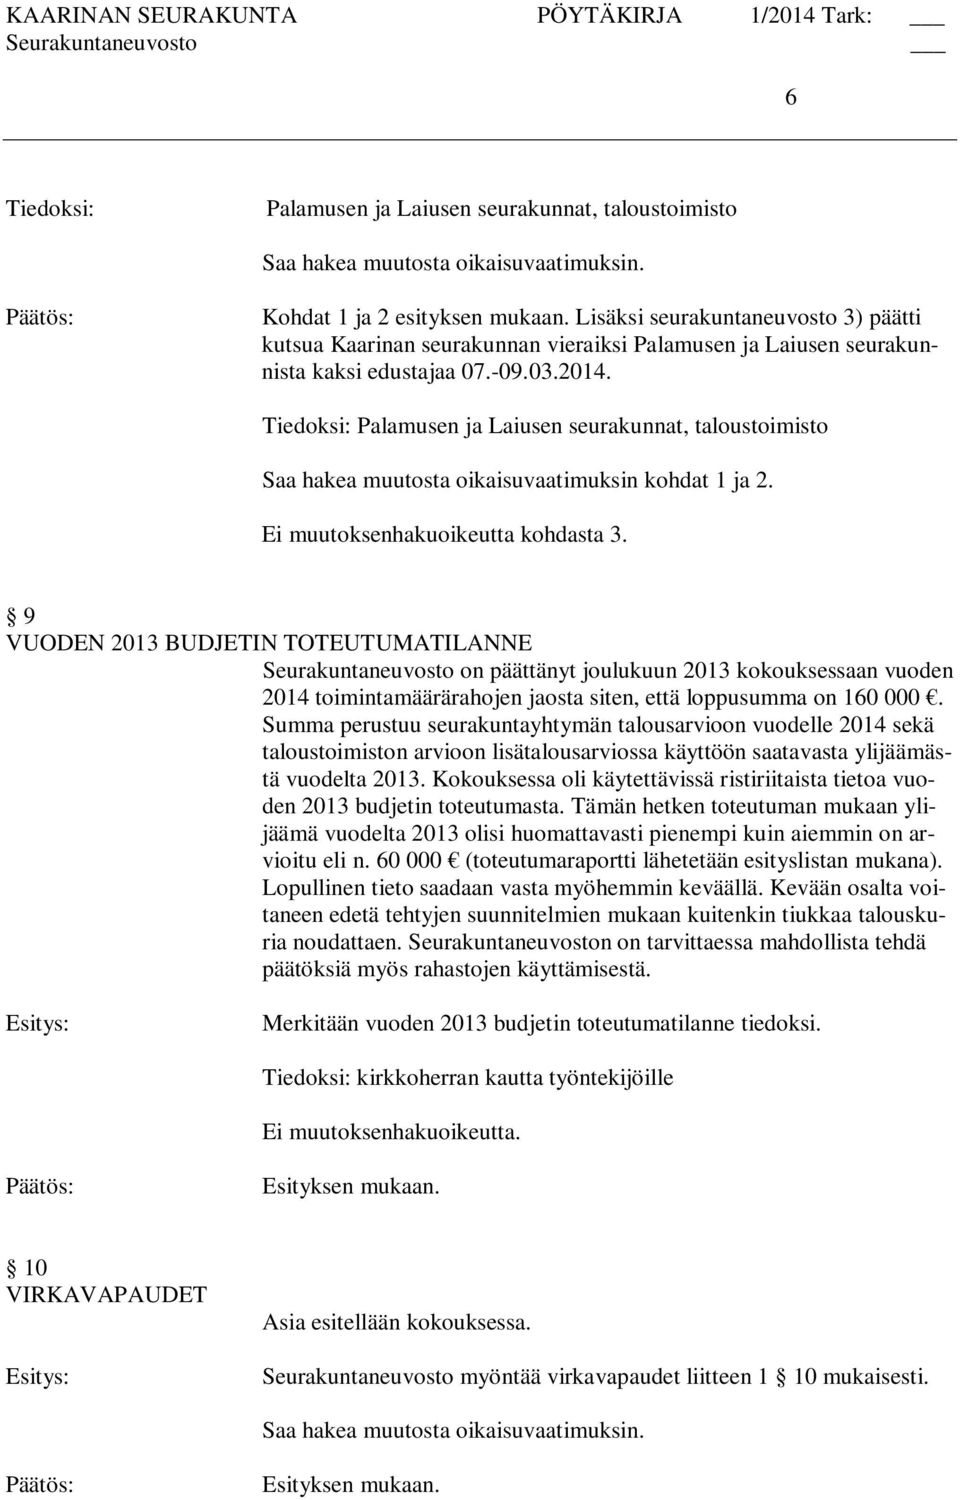 Tiedoksi: Palamusen ja Laiusen seurakunnat, taloustoimisto Saa hakea muutosta oikaisuvaatimuksin kohdat 1 ja 2. Ei muutoksenhakuoikeutta kohdasta 3.